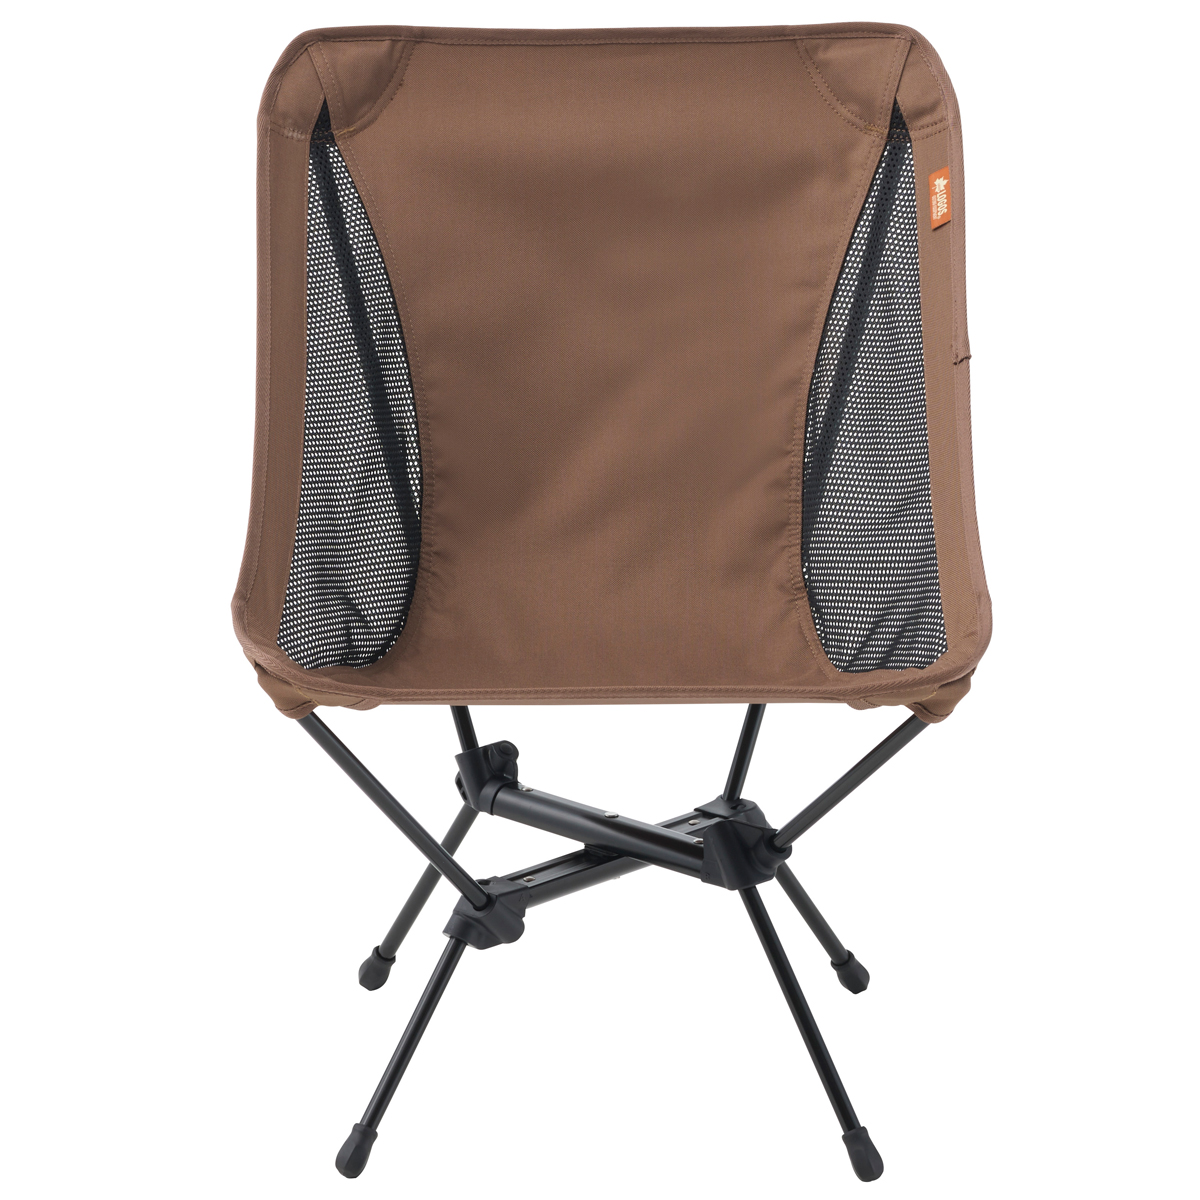 LOGOS エアライトバケットチェア|ギア|家具|椅子・ベンチ|製品情報 